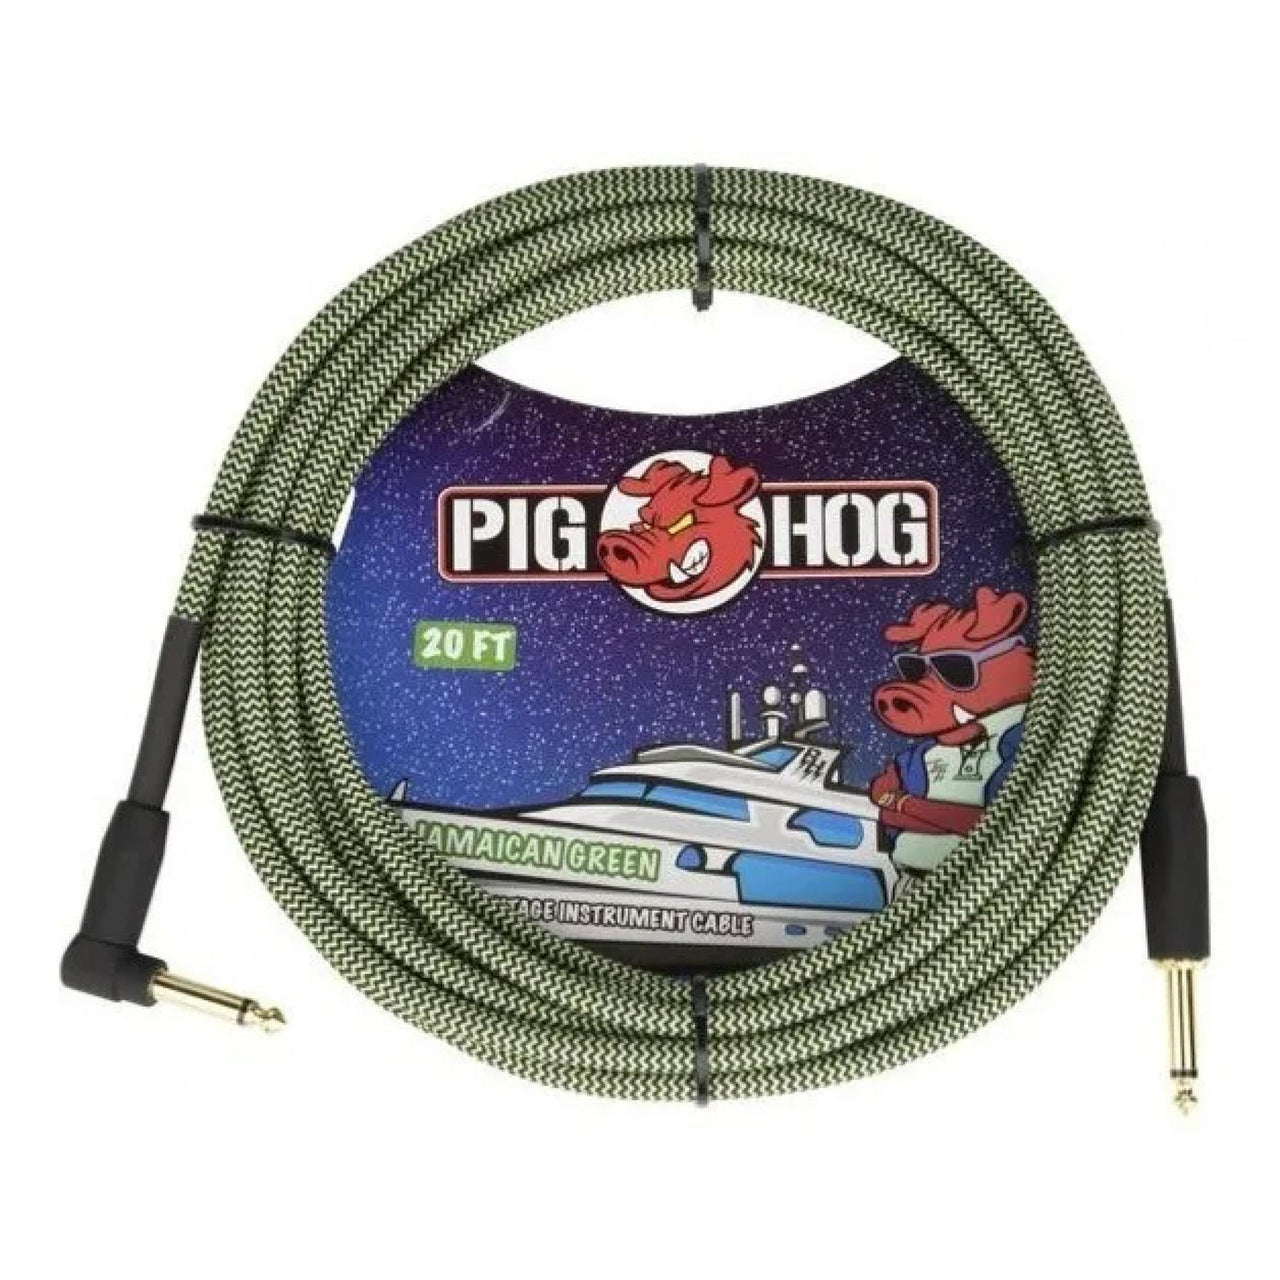 Cable Pig Hog P/instrumento Plug A Plug L Jamaican Green 6m, Pch20jgrr